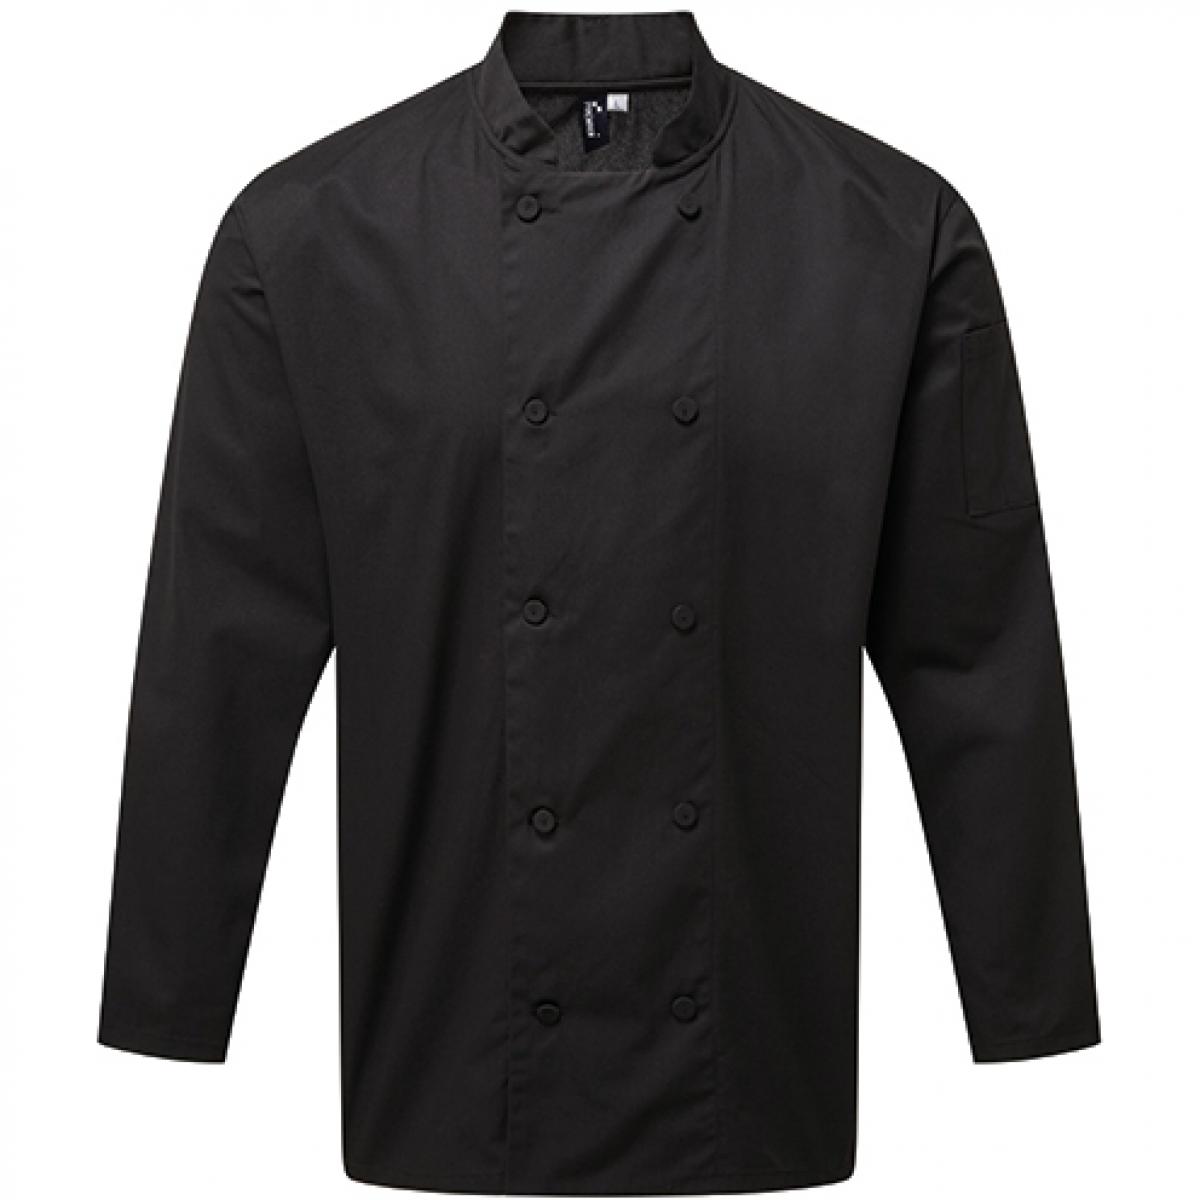 Hersteller: Premier Workwear Herstellernummer: PR903 Artikelbezeichnung: Kochjacke Chefs Long Sleeve Coolchecker® Jacket Farbe: Black